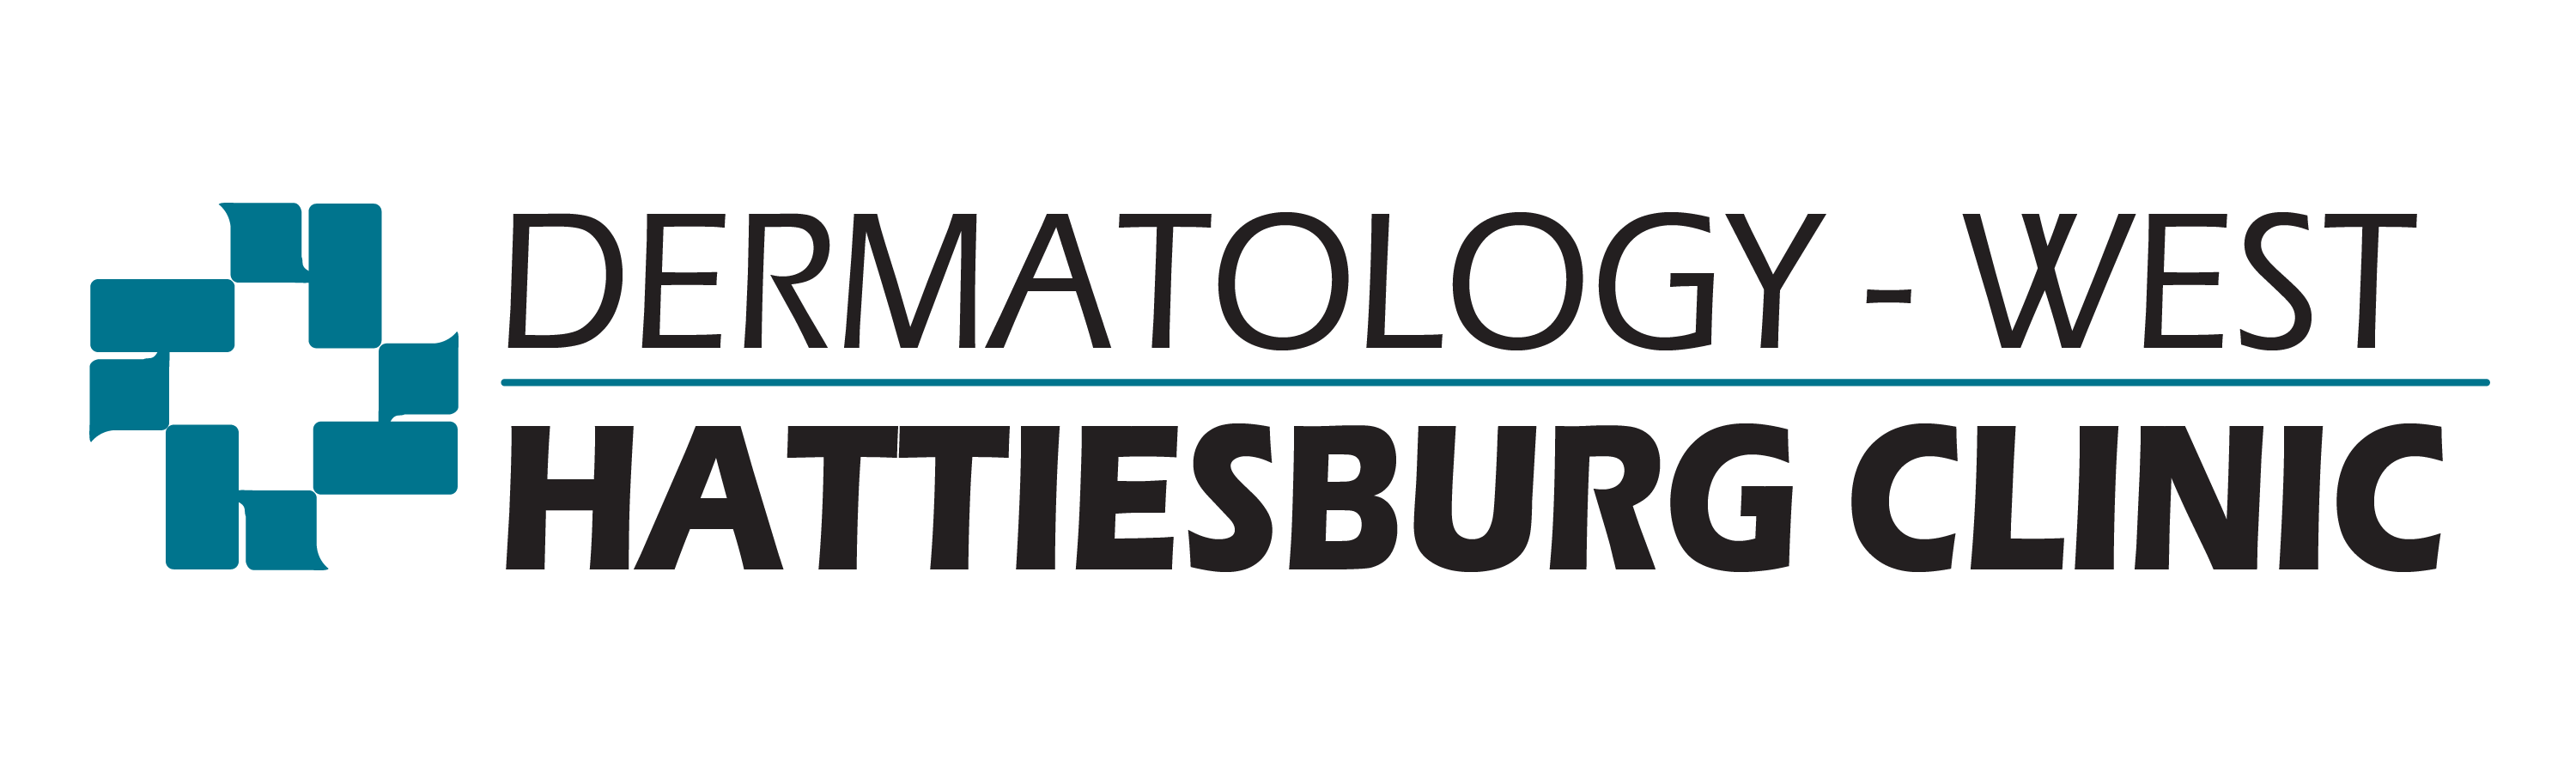 Dermatology - West logo